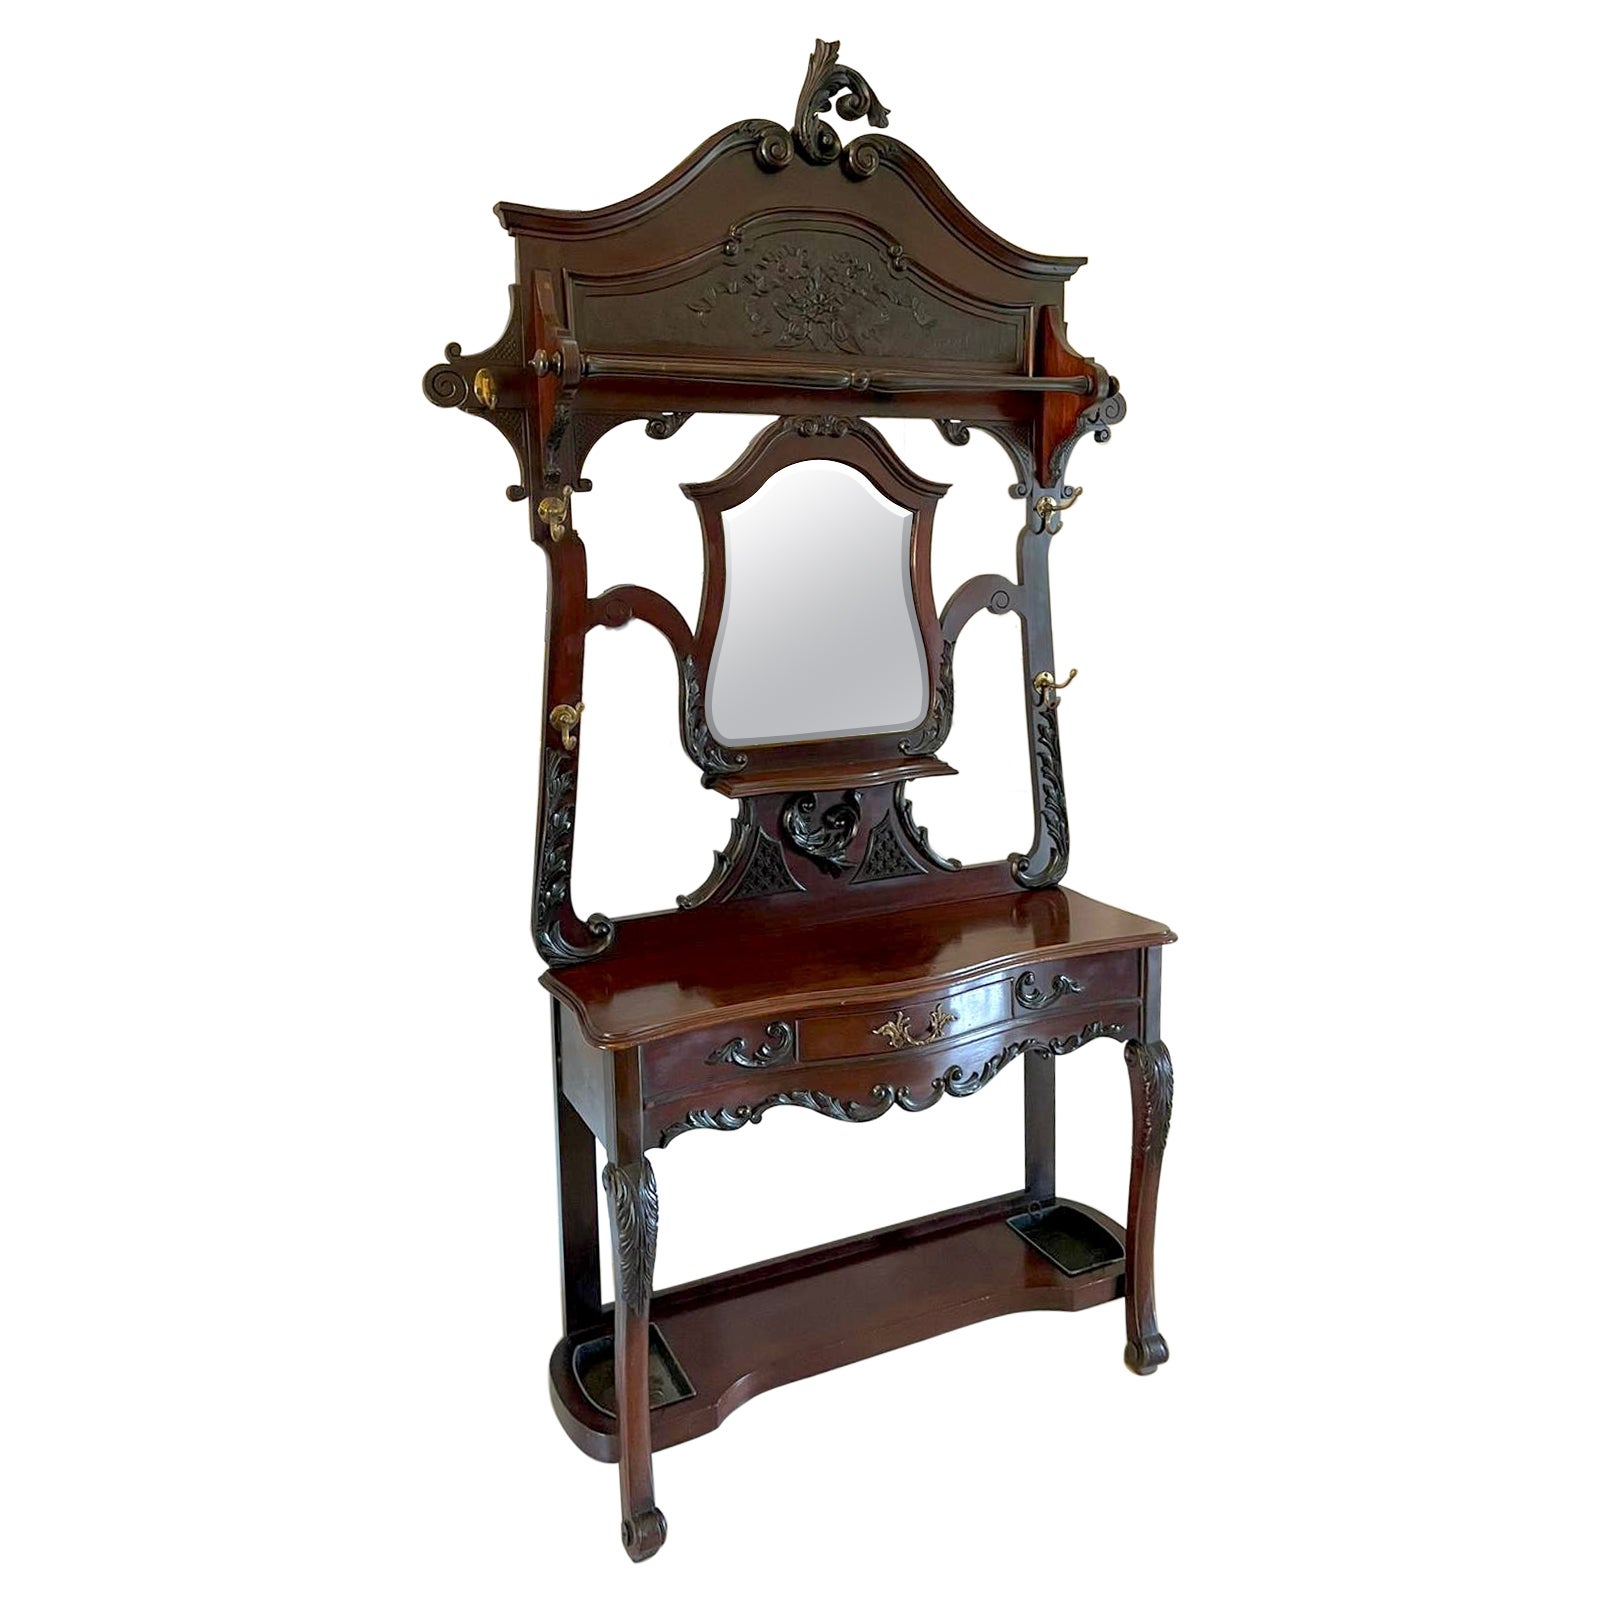 Qualité de l'ancien meuble d'entrée en acajou sculpté du 19e siècle de l'époque victorienne